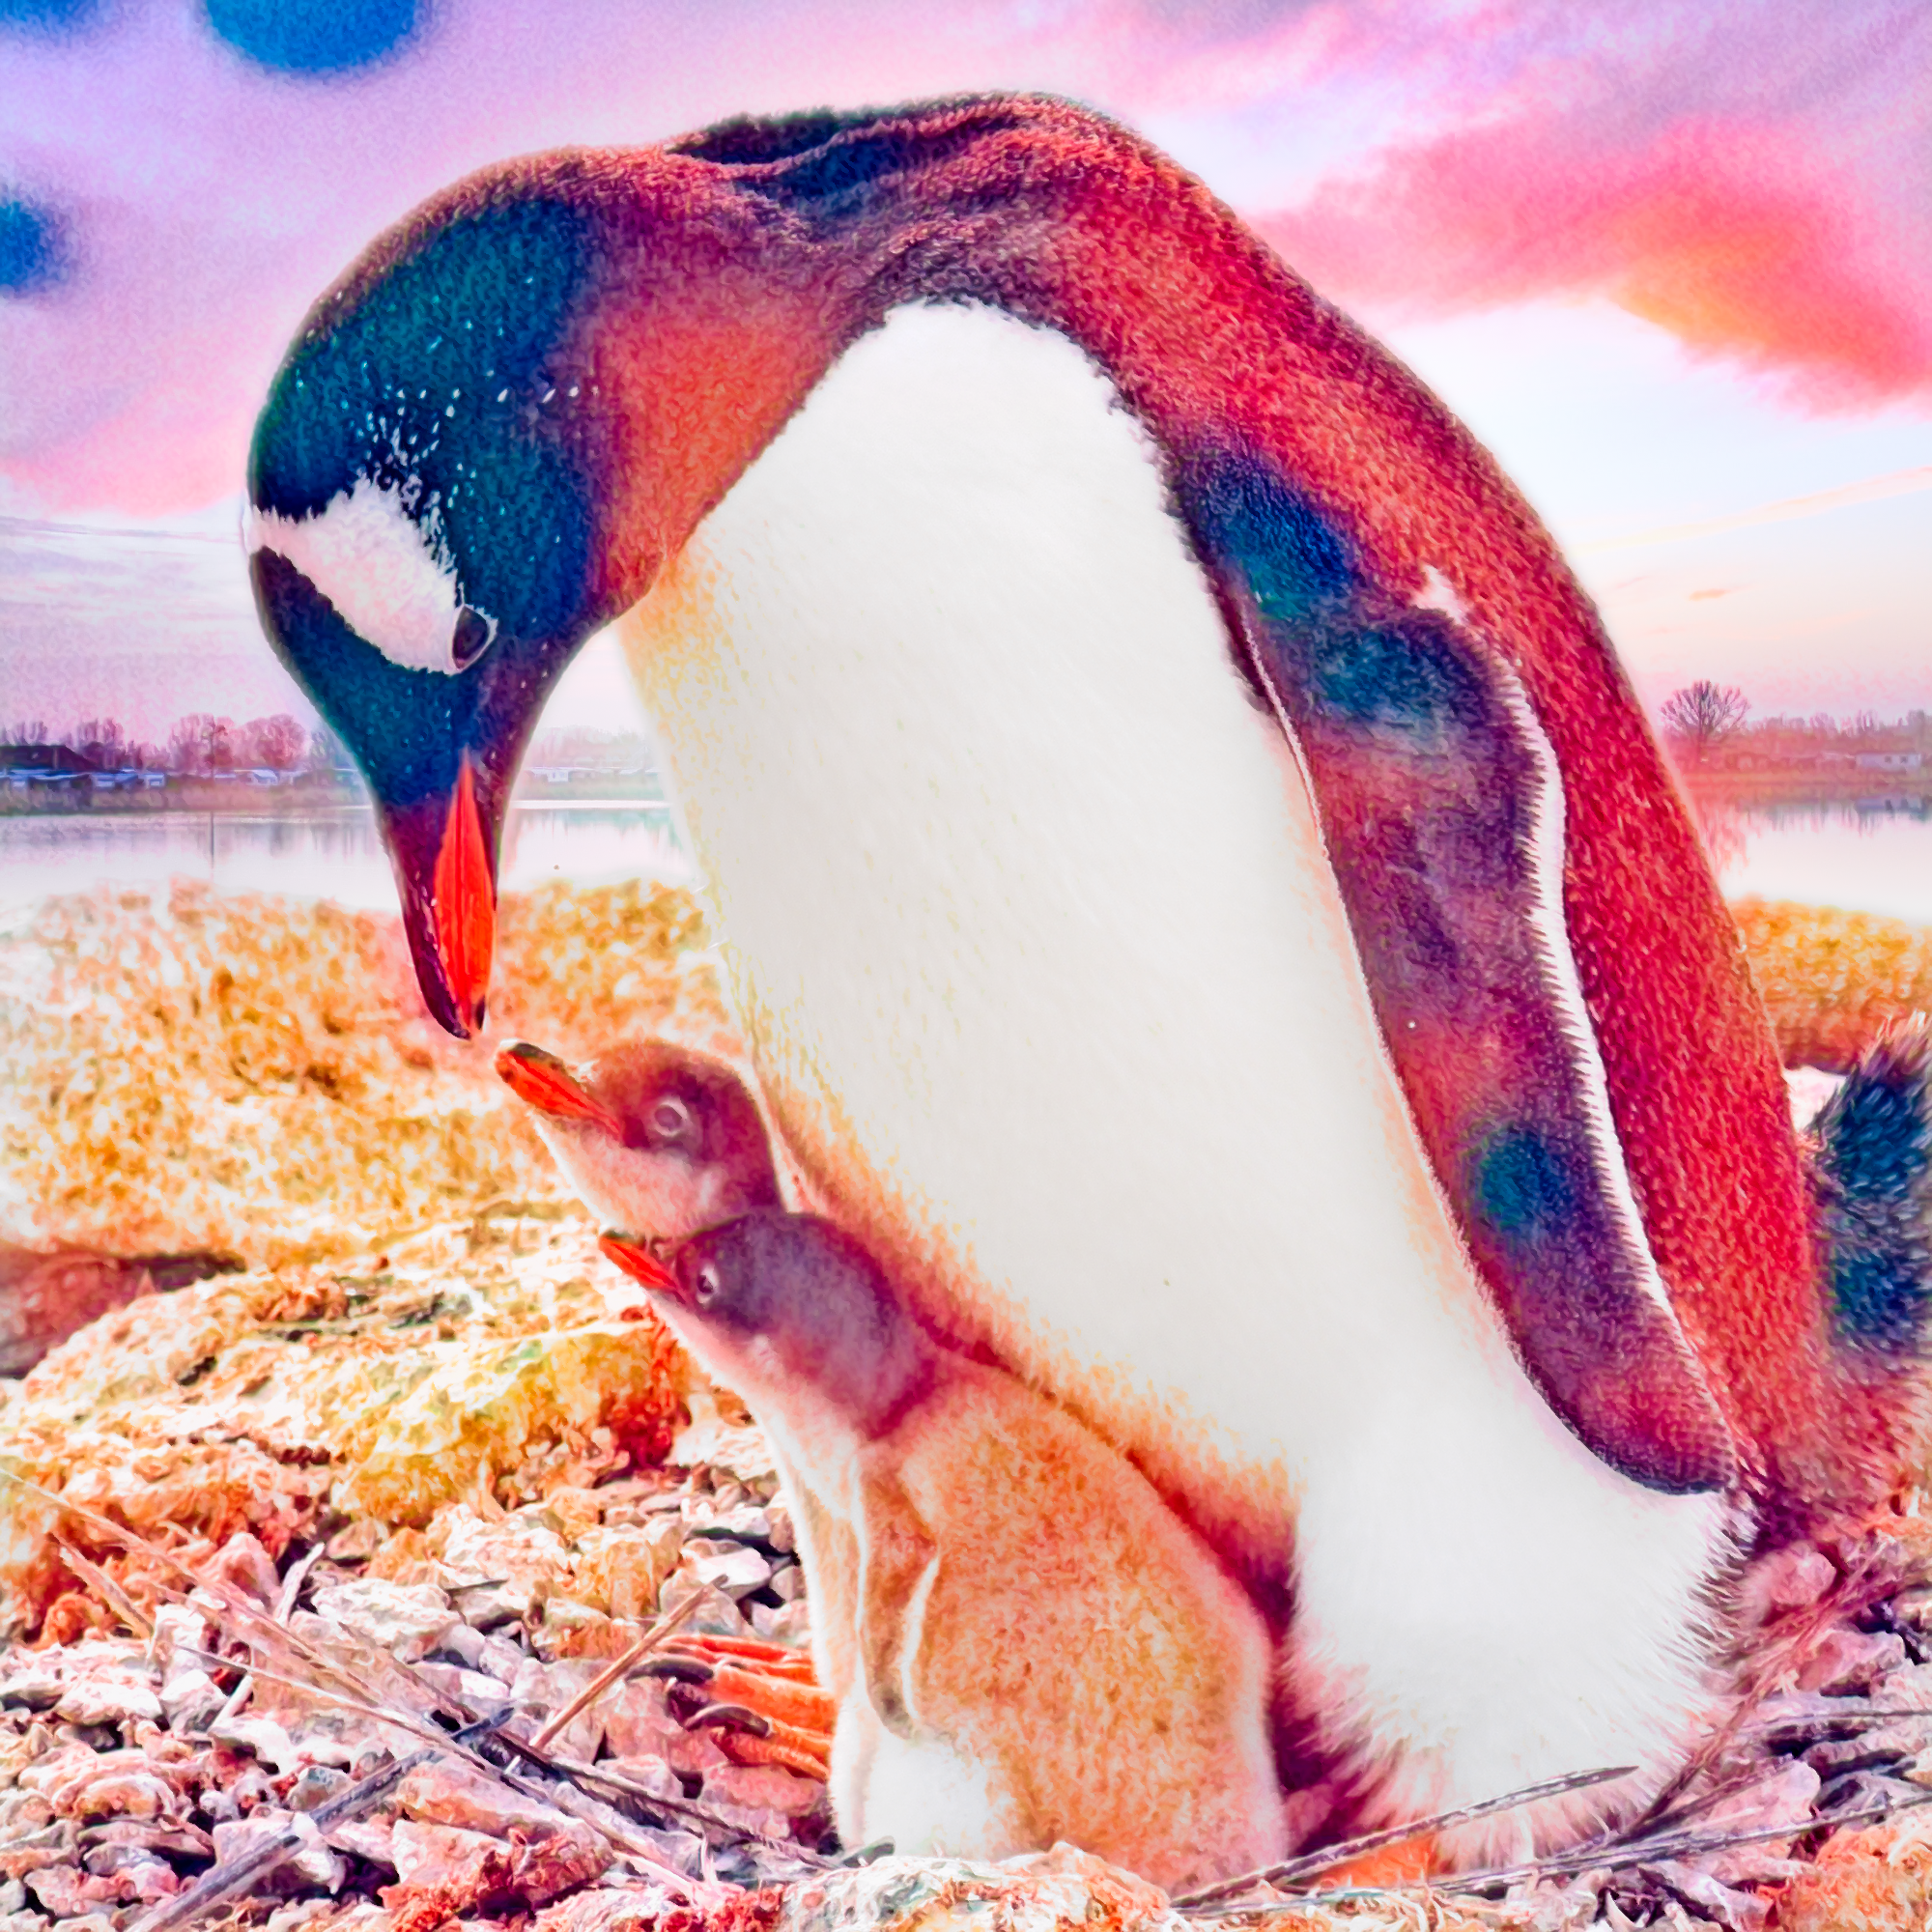 無料イラスト 背景画像素材 ペンギンの親子と家族と夕日のかわいい北極と南極の動物 Free Illustlation くりえいてぃぶ